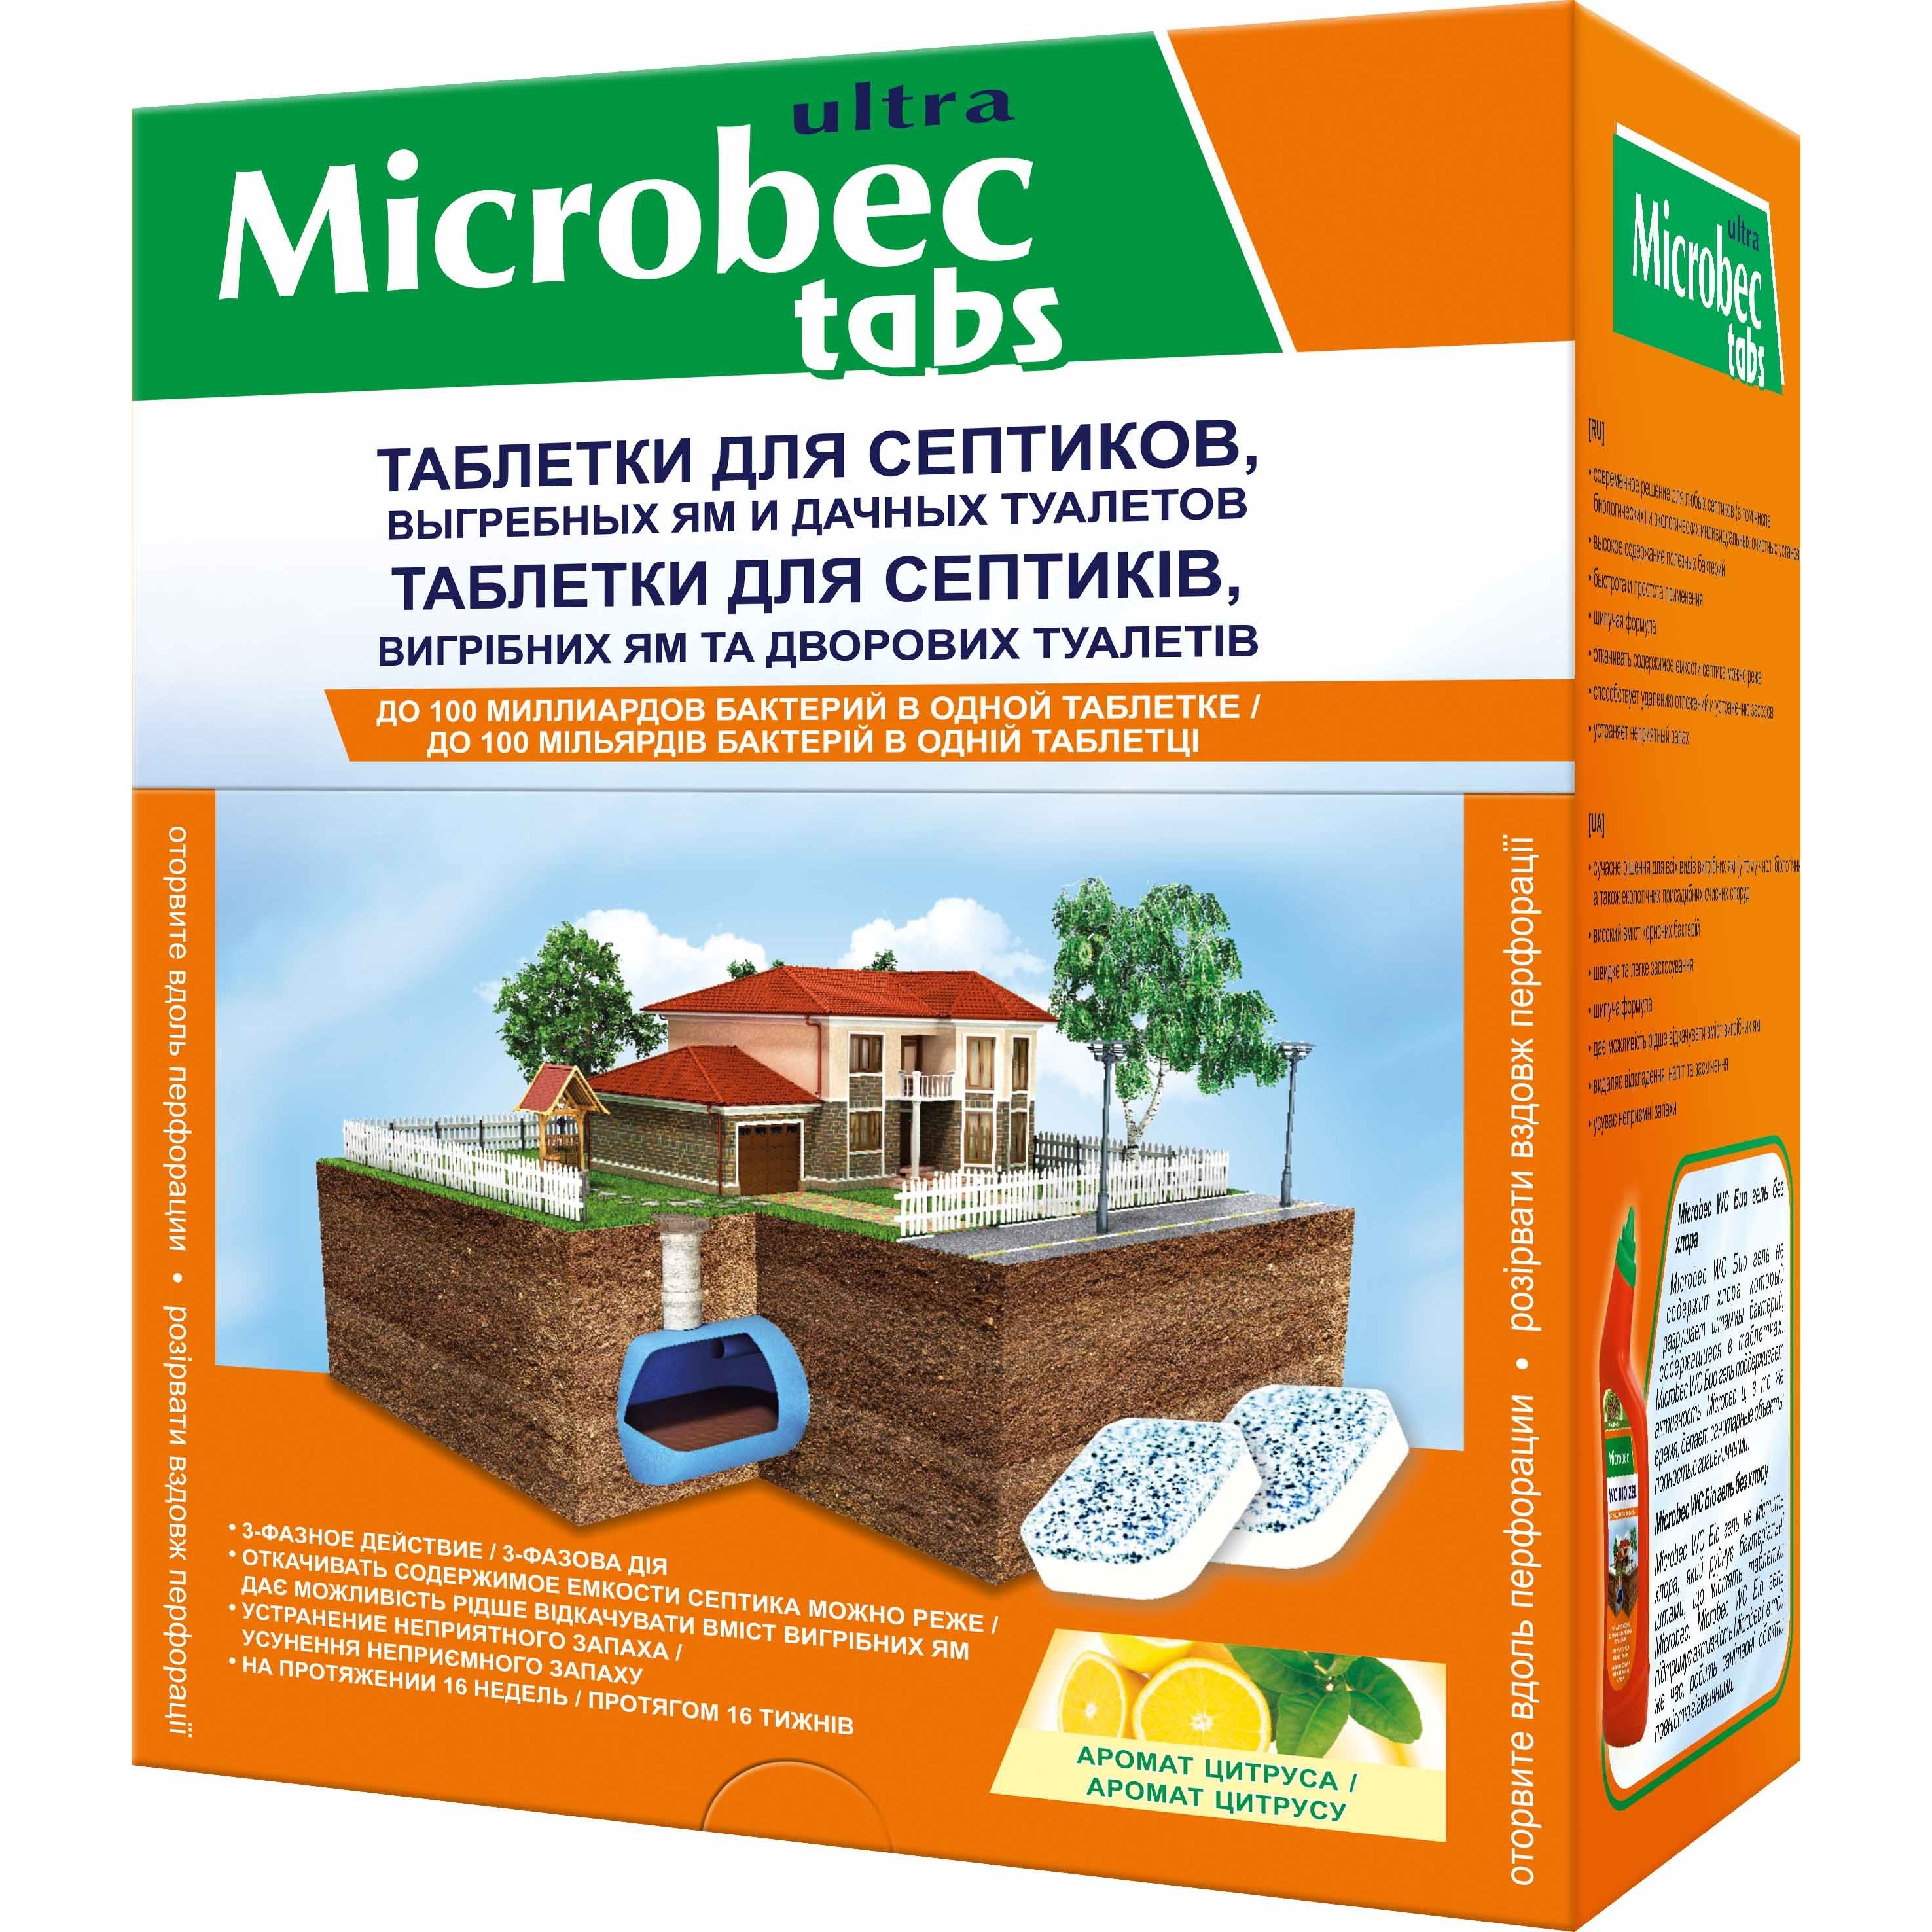 Средство для септиков, выгребных ям и дворовых туалетов Bros Microbec tabs 1 таблетка 20 г - фото 1